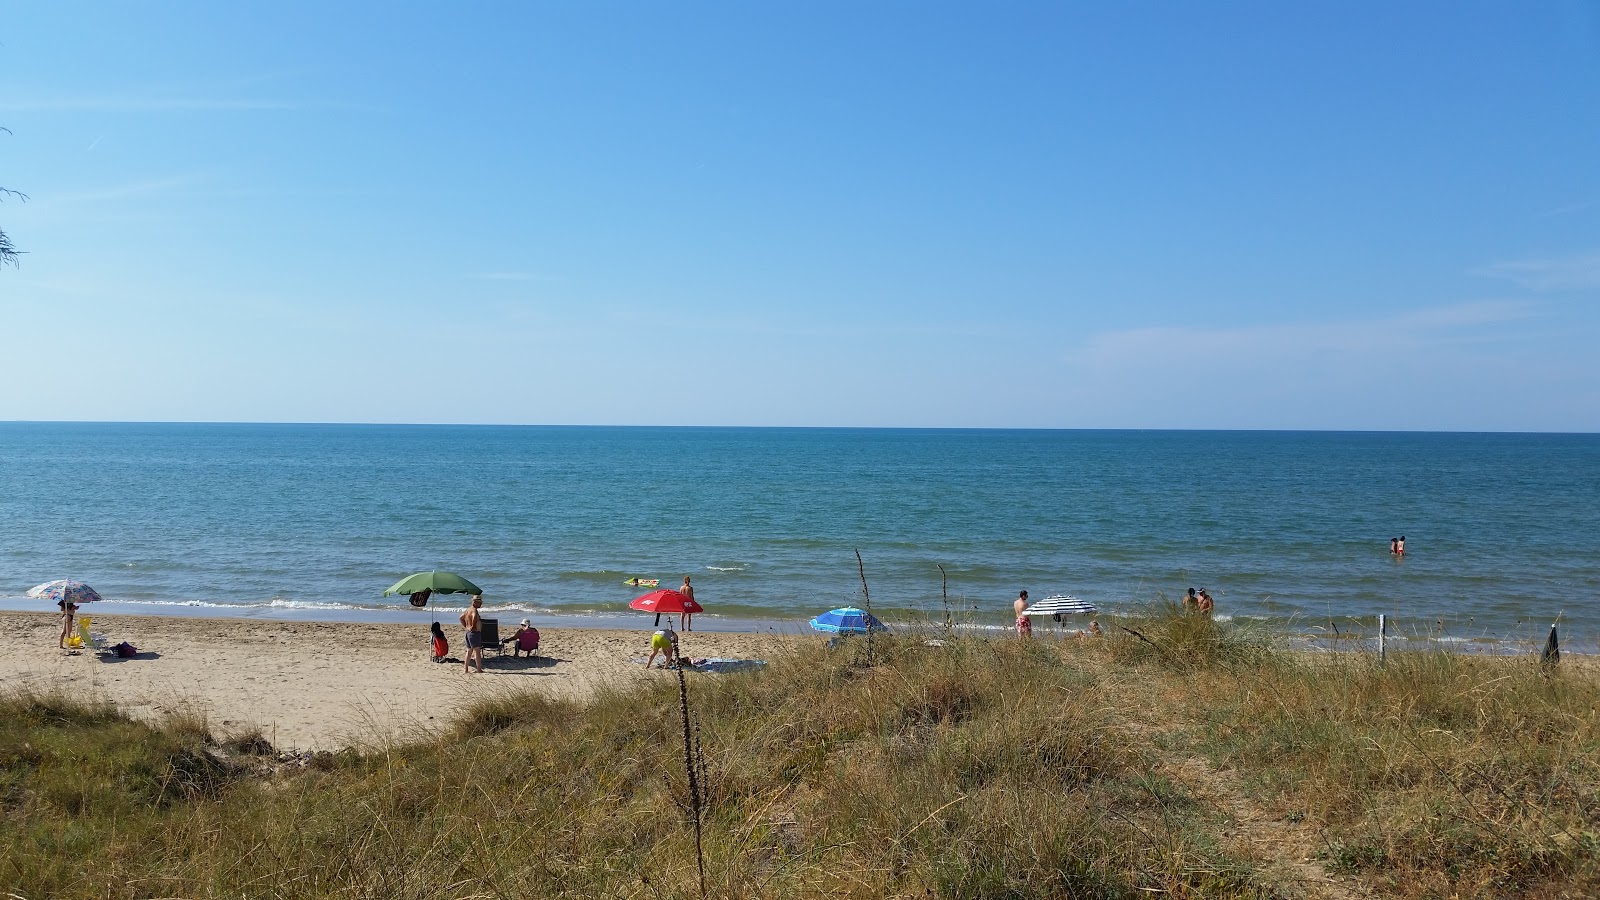 Foto de Spiaggia di Foce Varano - lugar popular entre los conocedores del relax